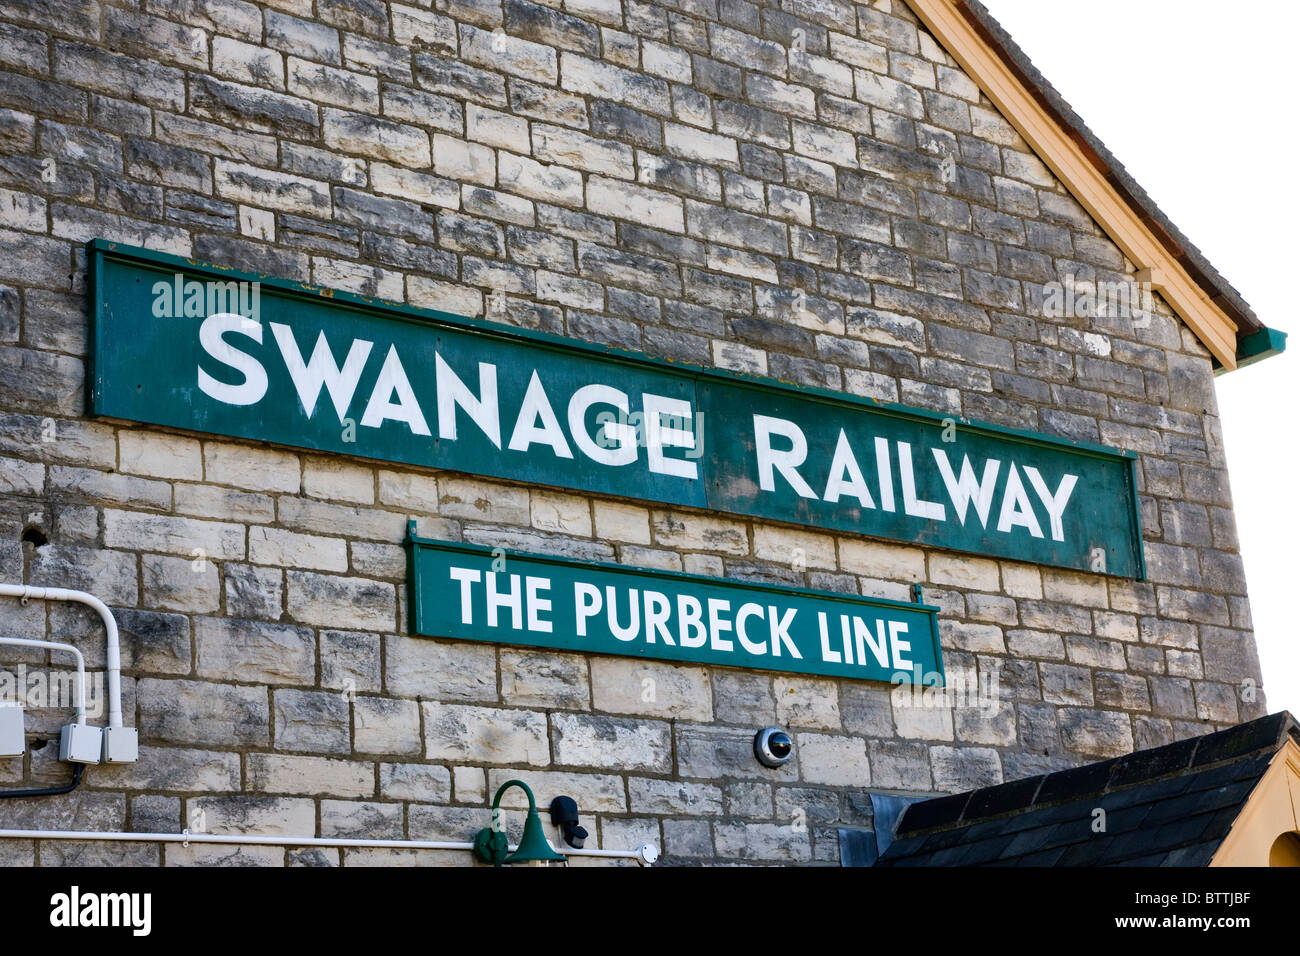 Swanage Station Railway Sign, Dorset, UK Stock Photo